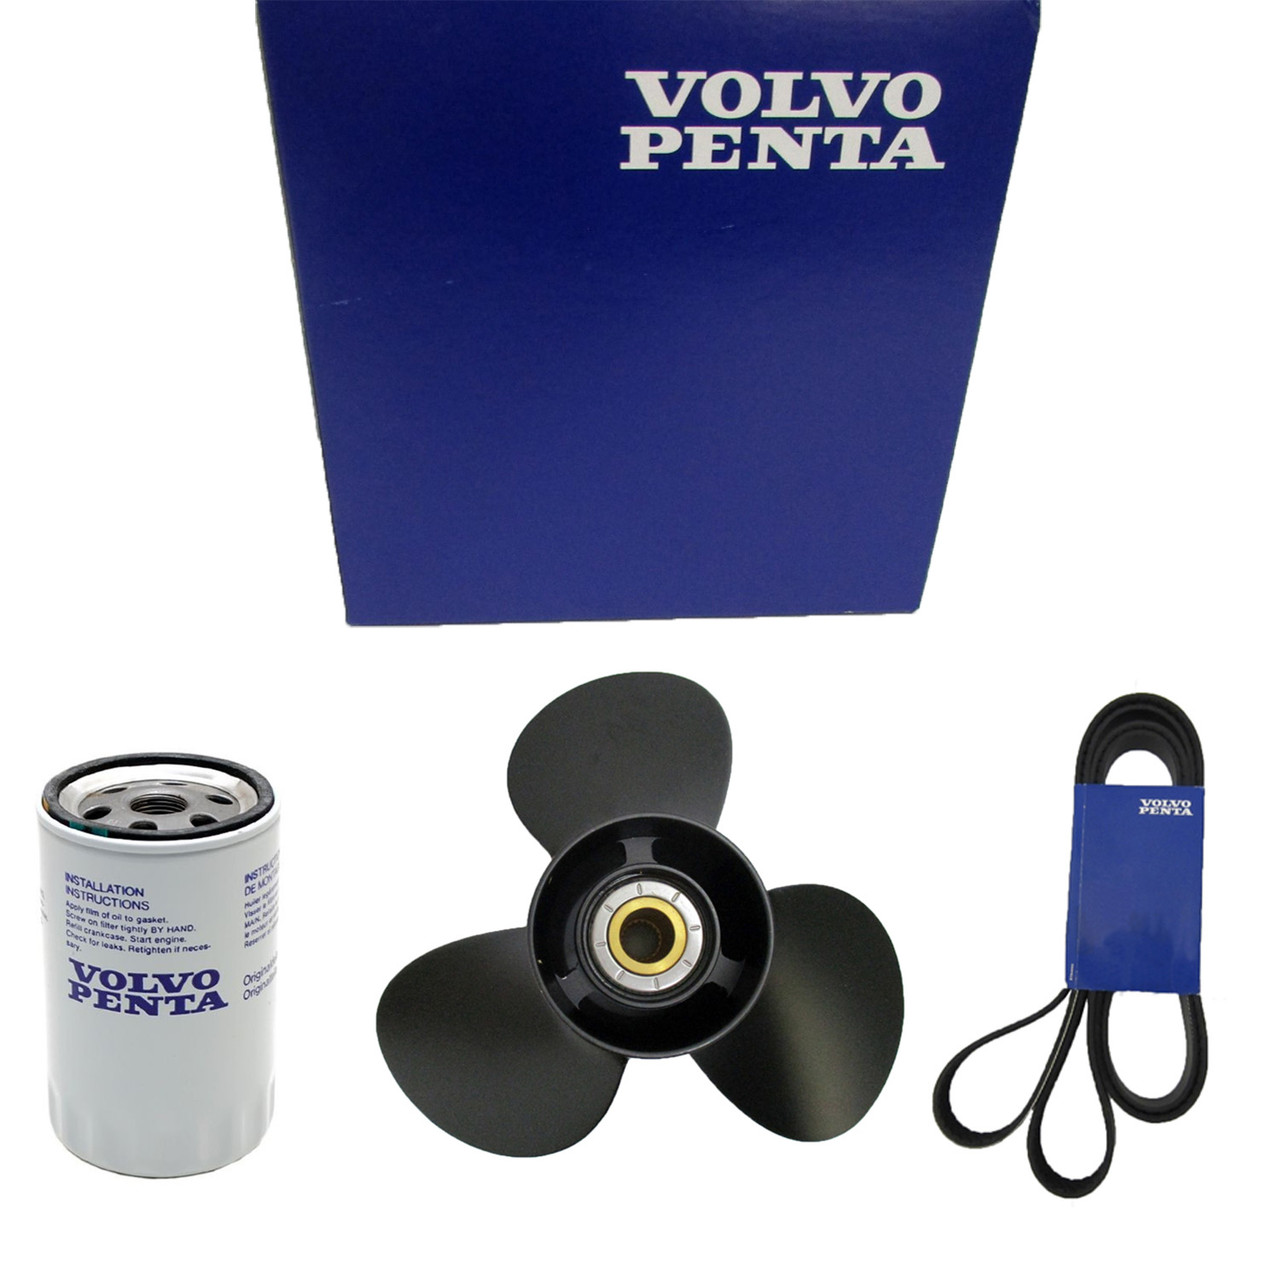 Volvo Penta New OEM Injector Kit, 23958576